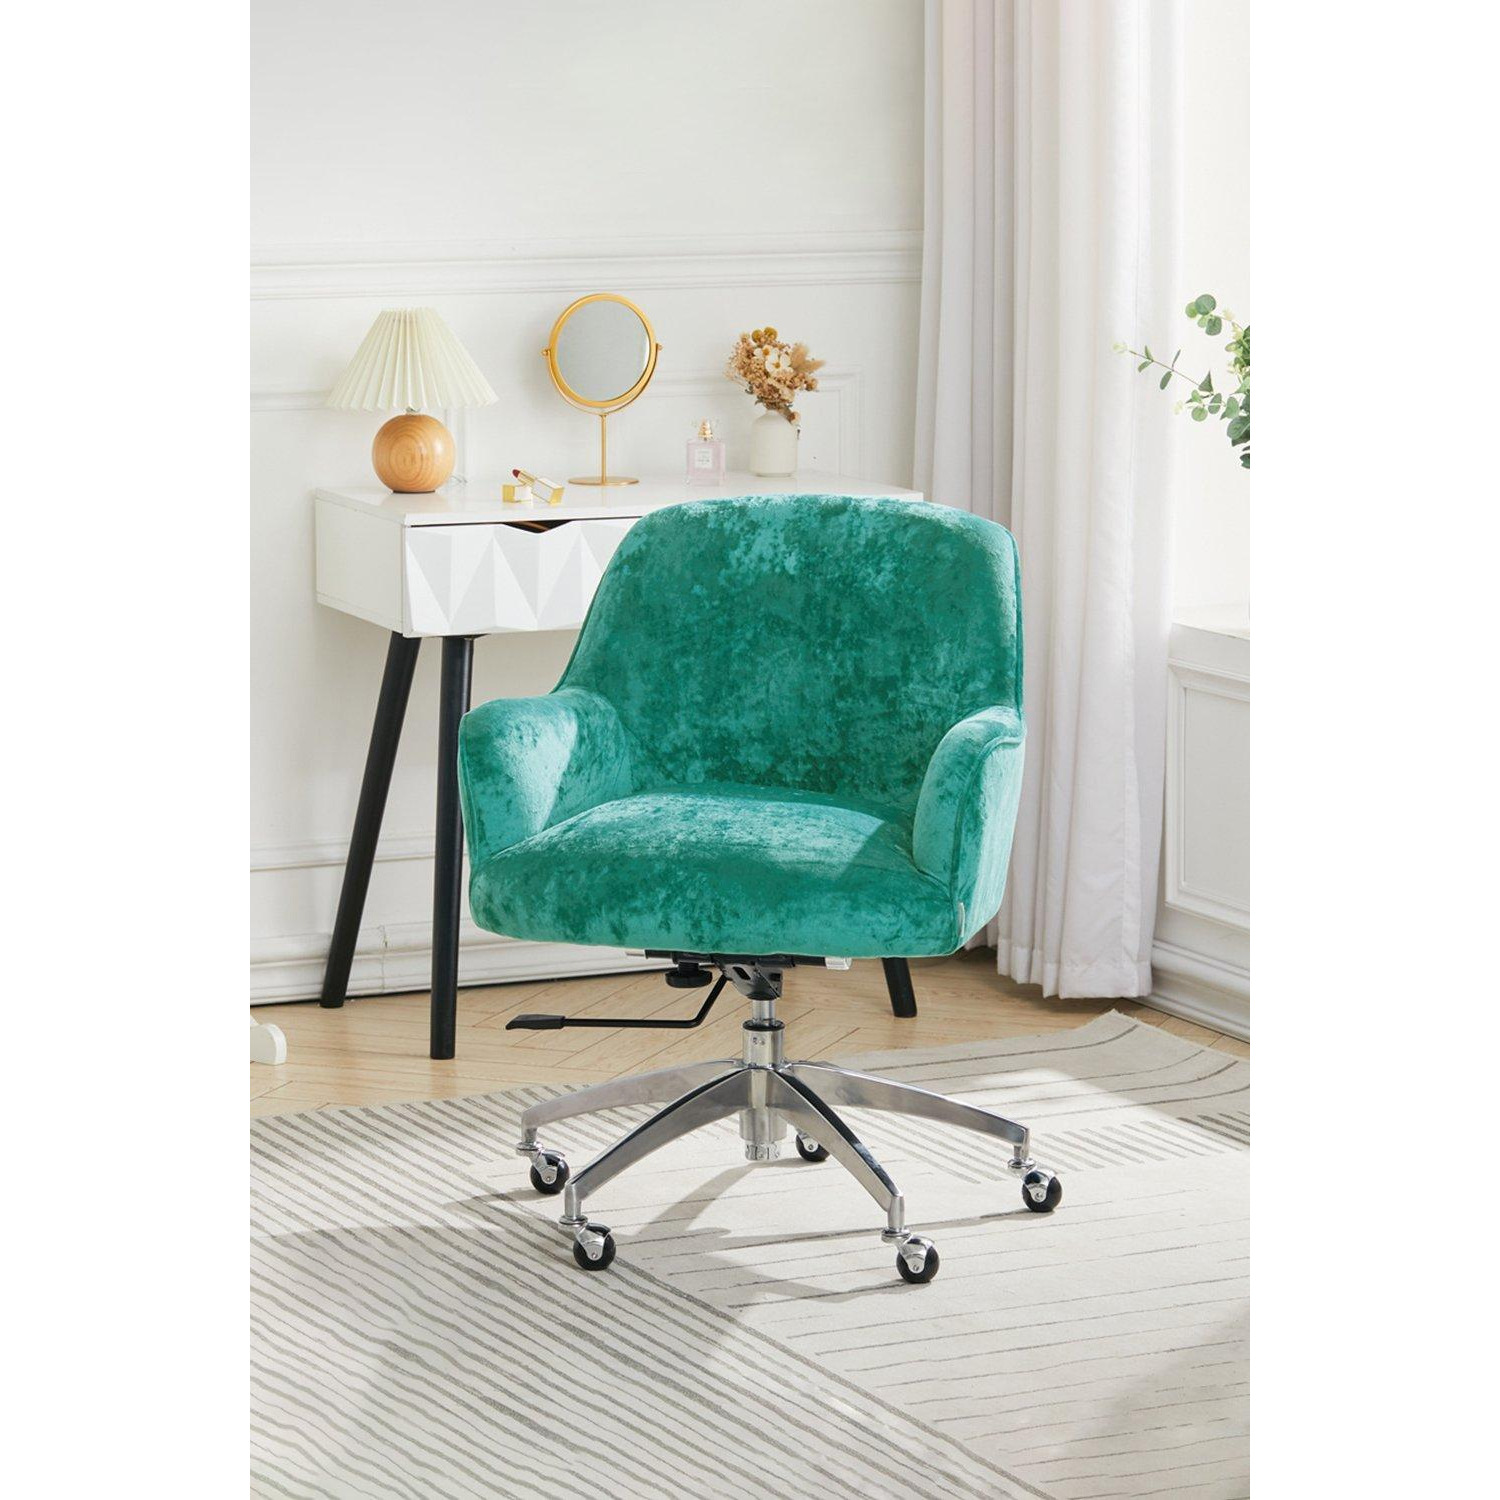 Velvet Upholstered Wheeled Swivel Office Chair - image 1